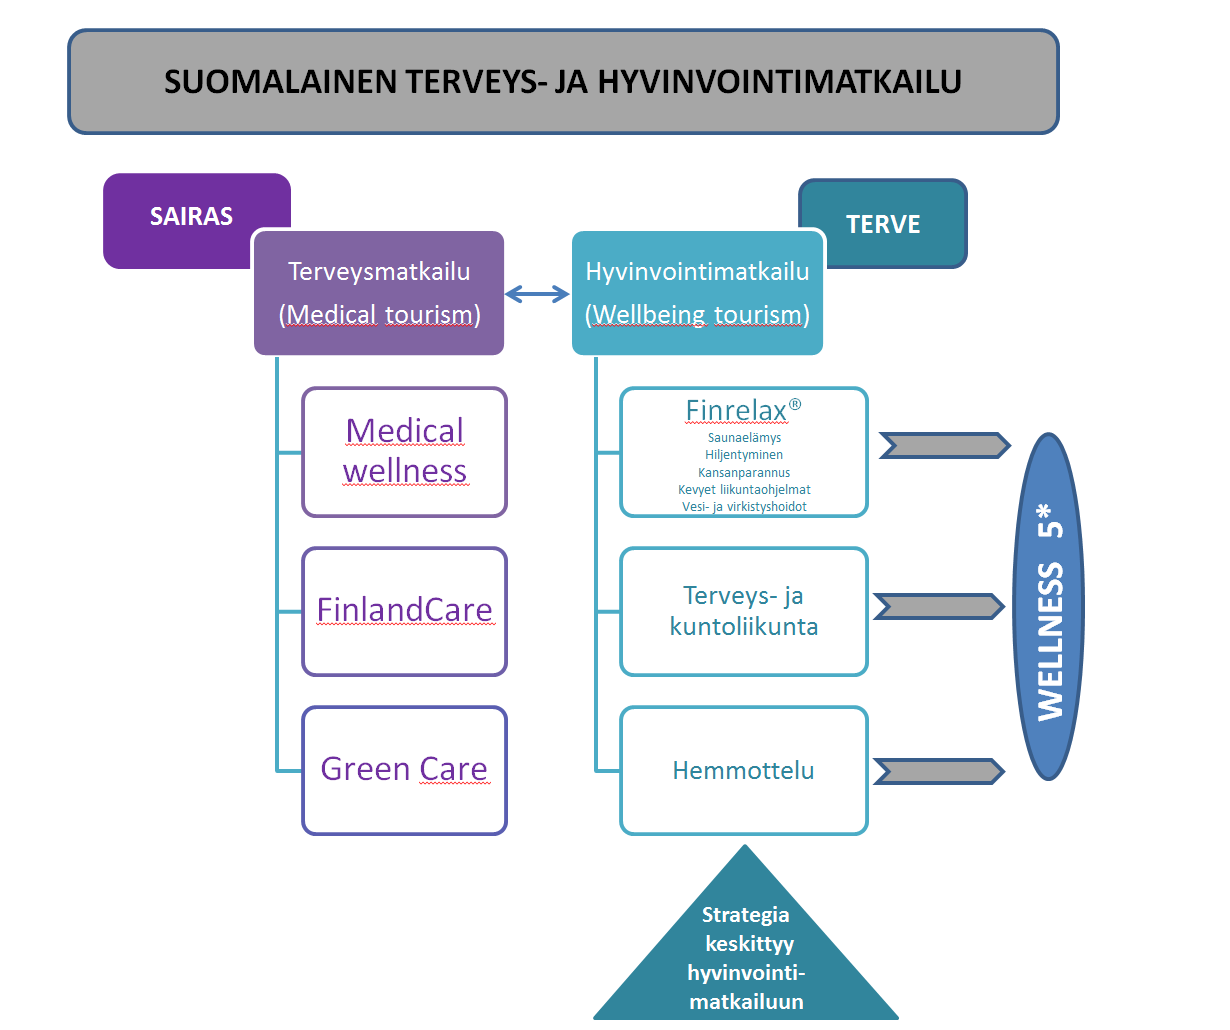 Kaaviossa 3 esitetään hyvinvointimatkailun peruskartoituksen suosittelemat nimikkeet päivitettynä versiona kaavion muodossa: koko teeman kattotermi on "suomalainen terveys- ja hyvinvointimatkailu" ja